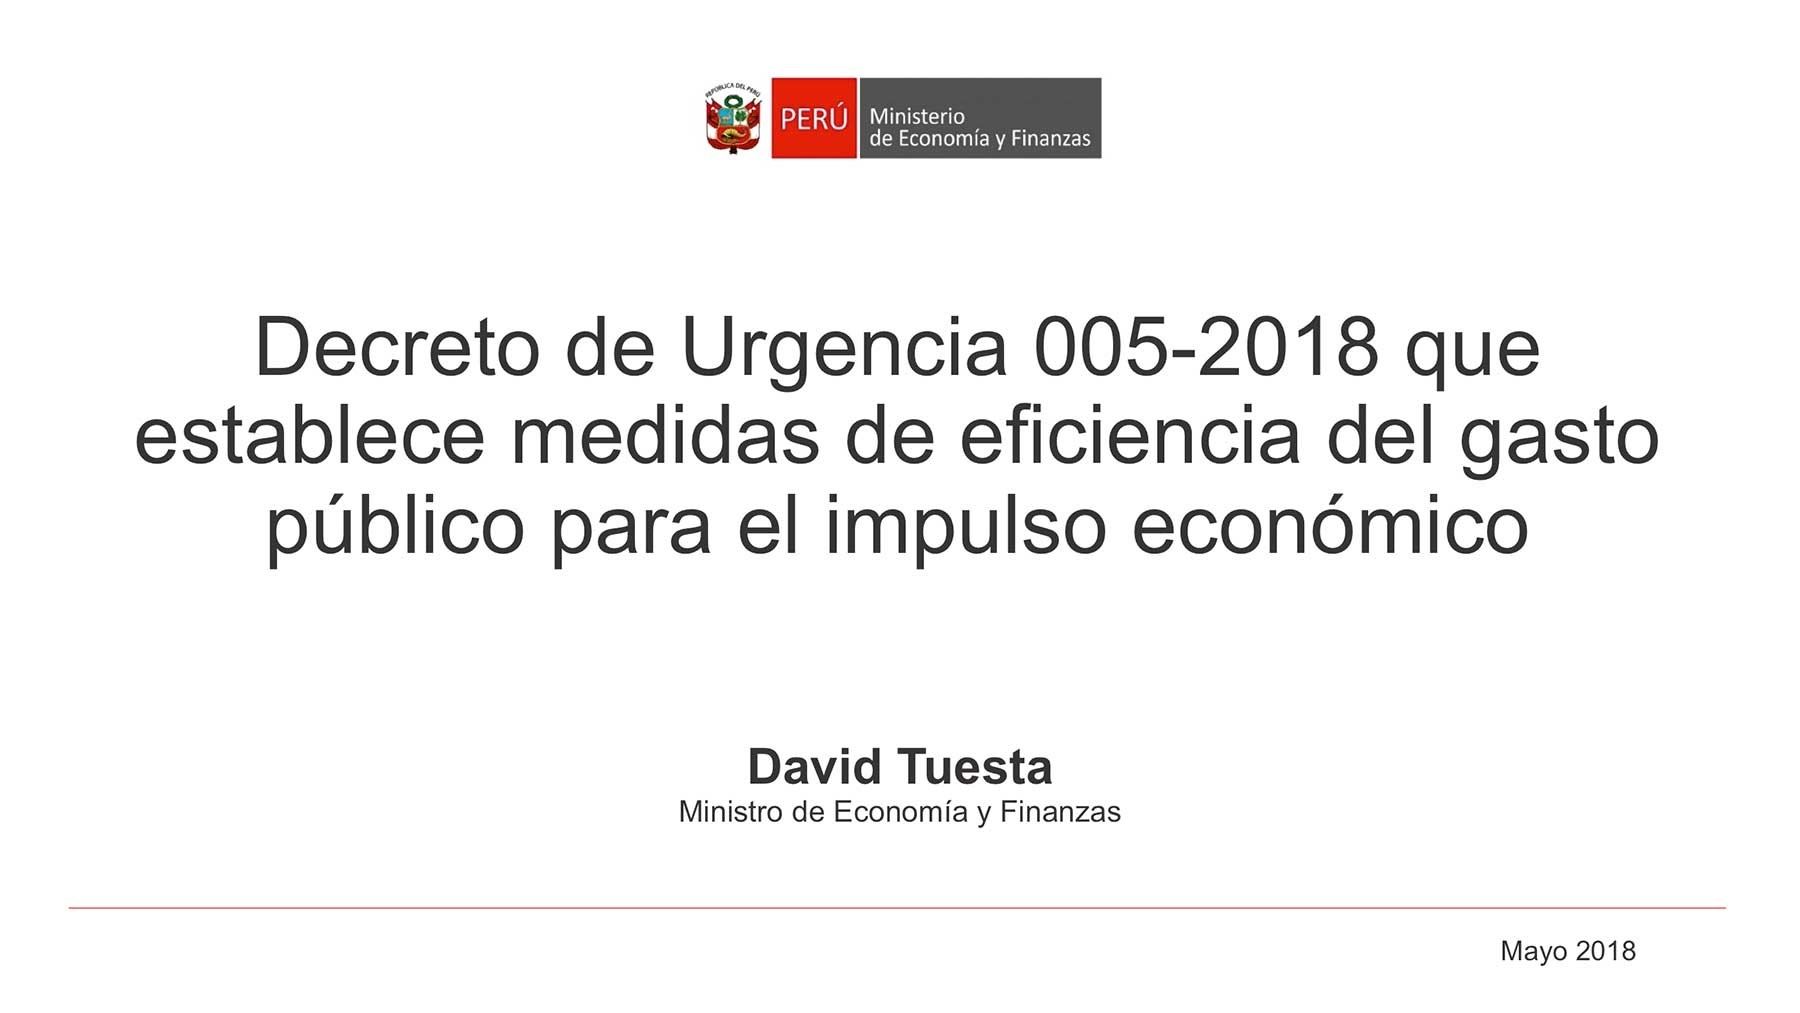 Decreto de urgencia 005-2018 que establece medidas de eficiencia en el gasto público para el impulso económico. Foto: Cortesía